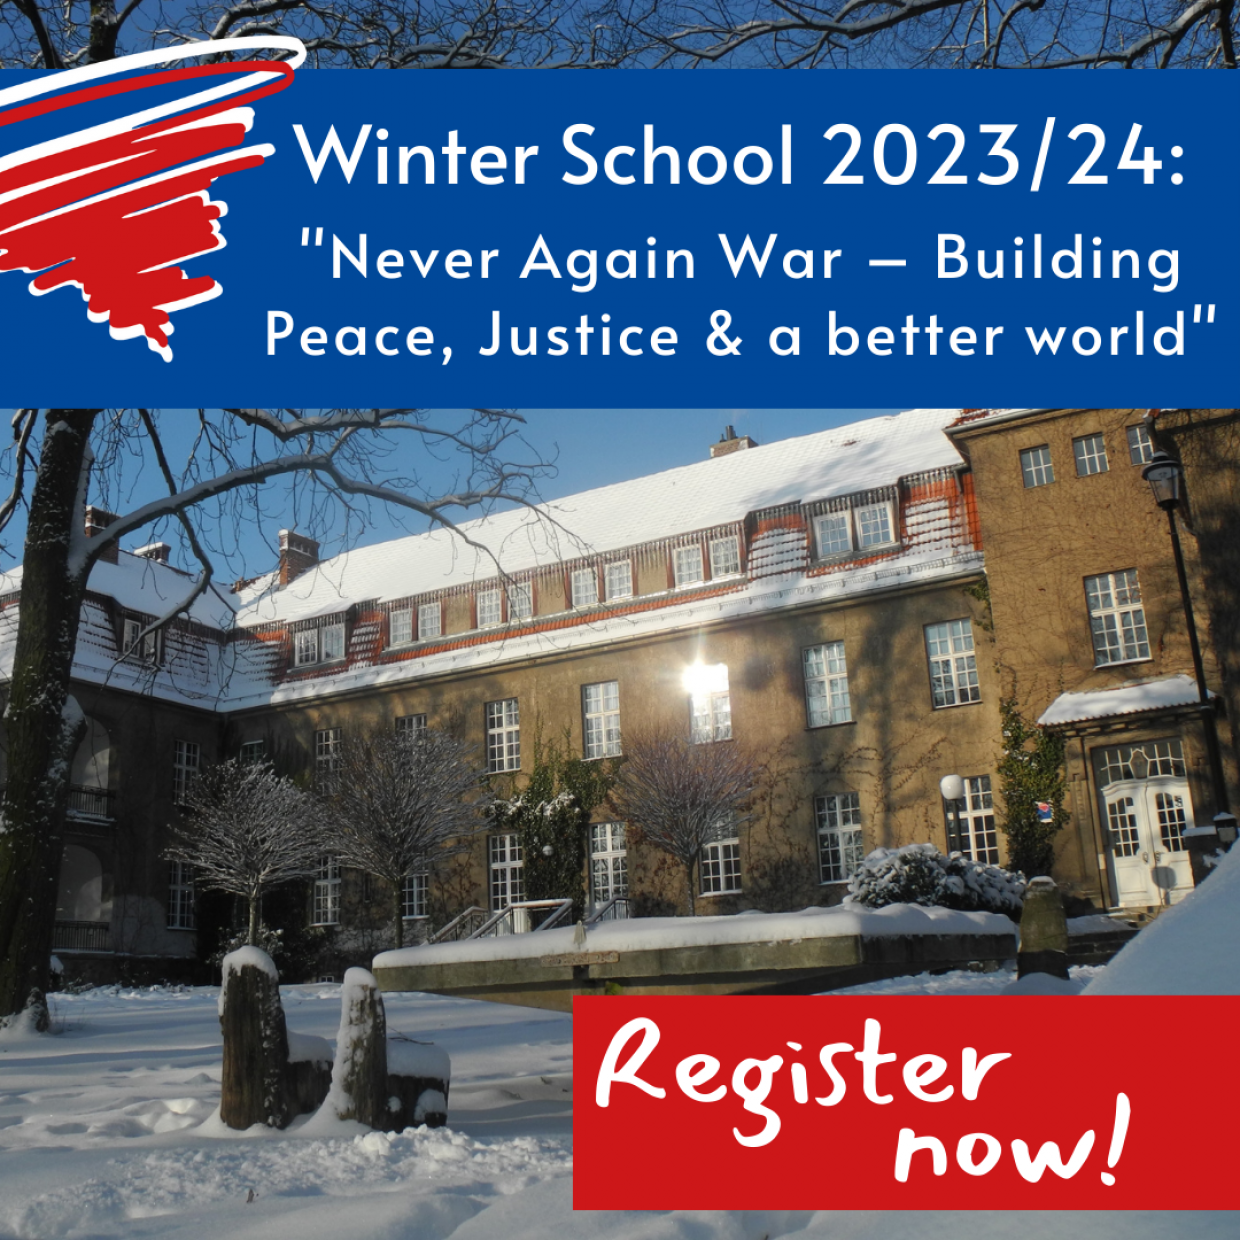 Ankündigungsbild für die Winter School 2023/24.